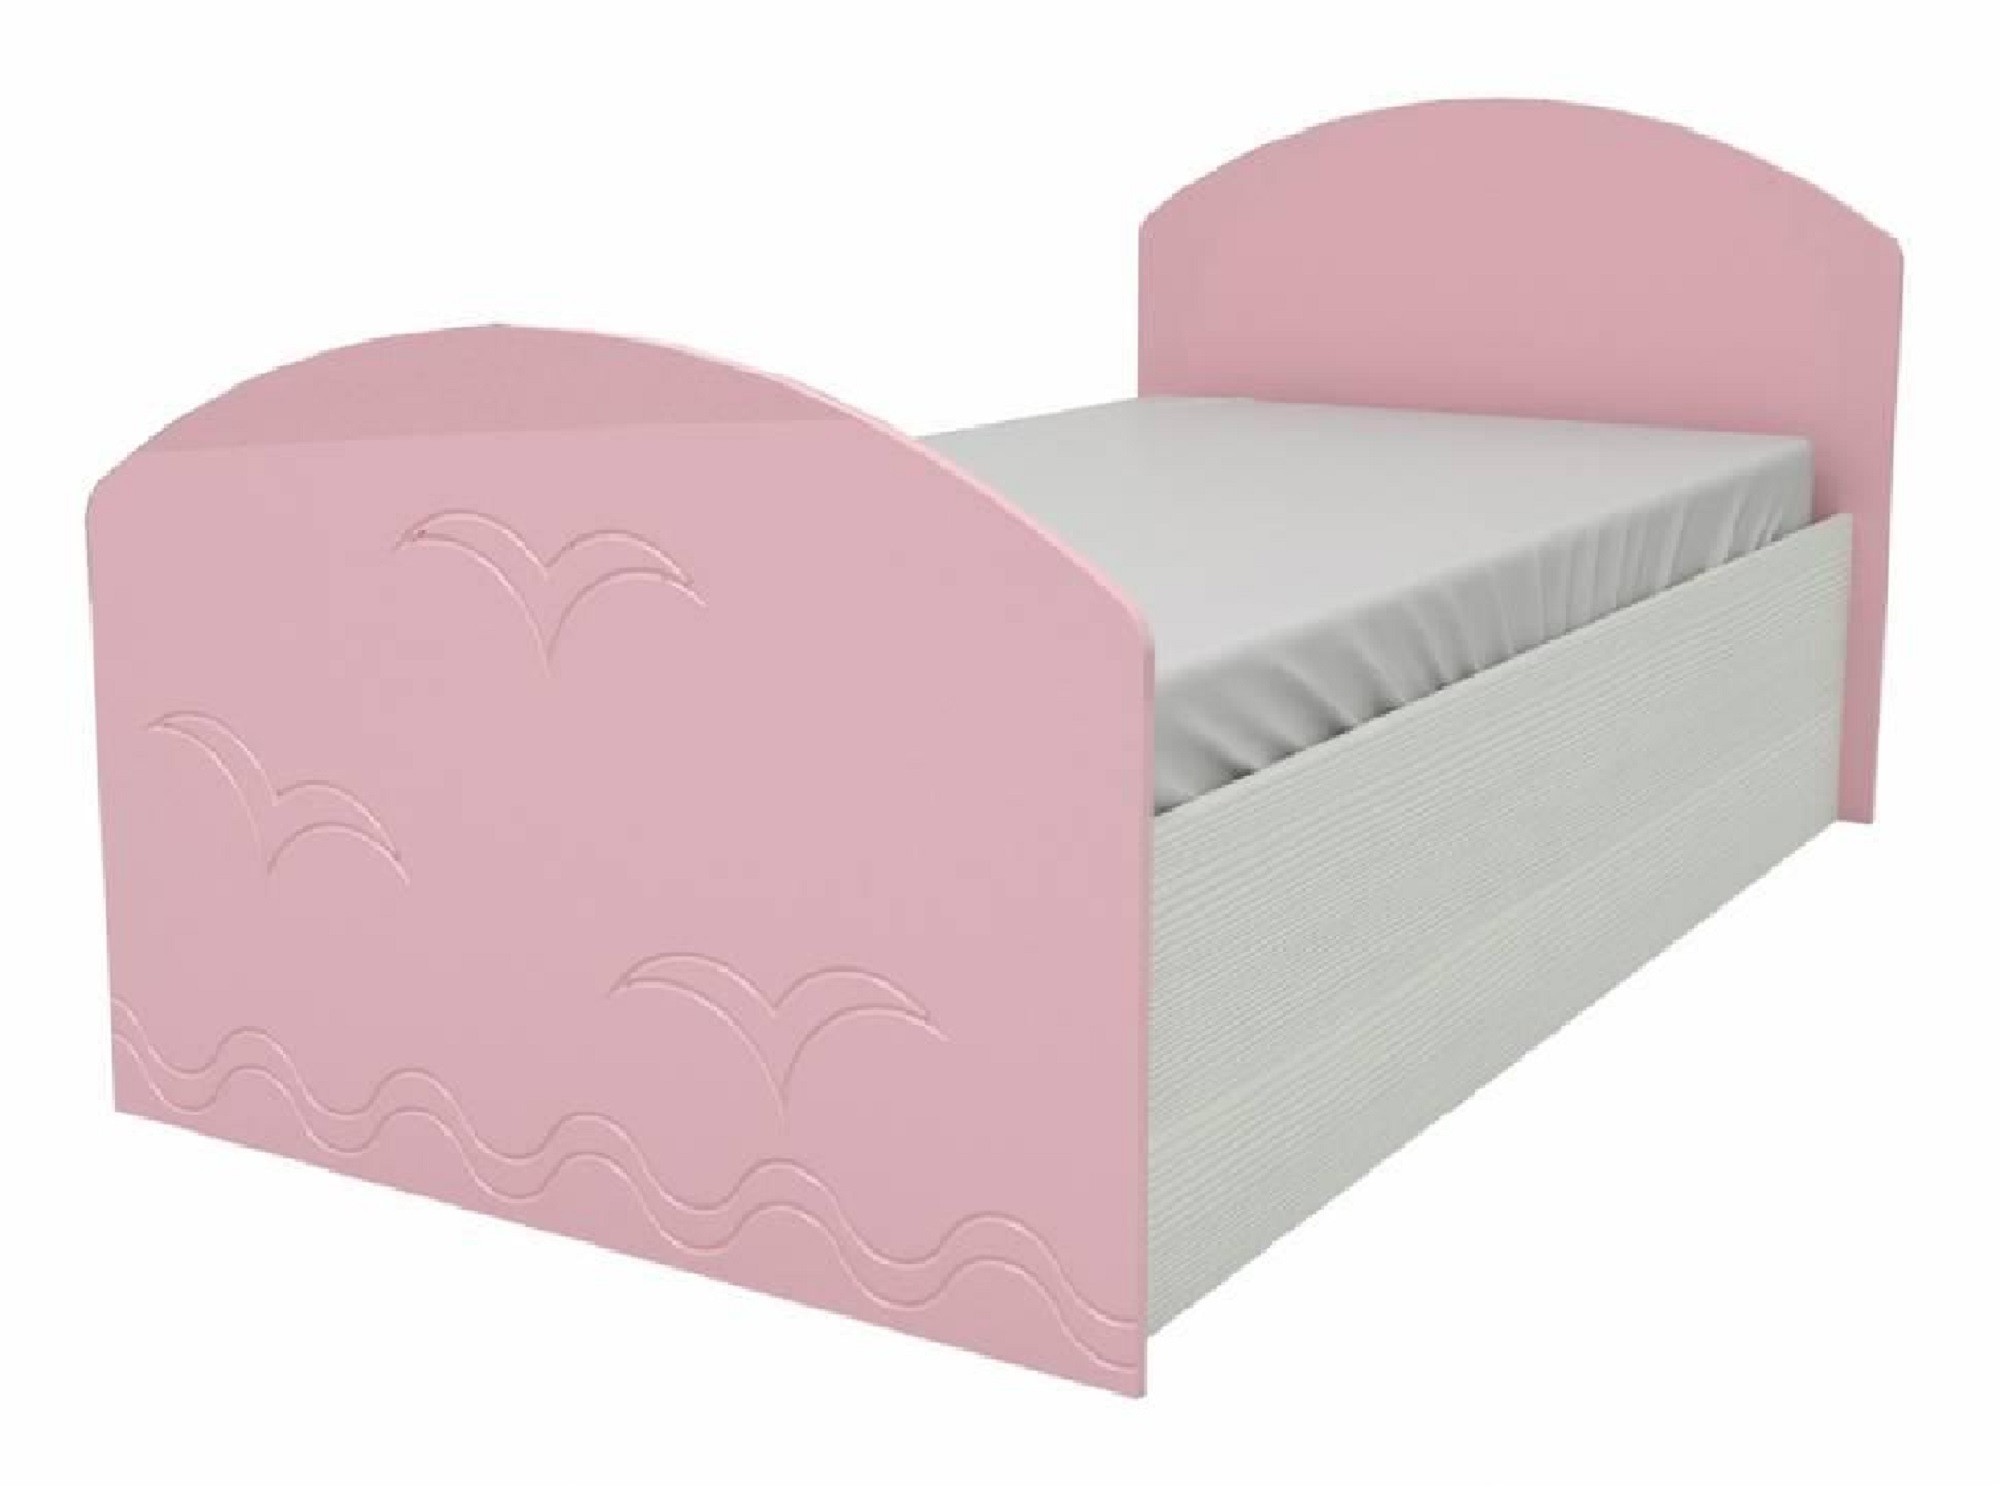 Юниор-2 Детская кровать 80, металлик (Розовый металлик, Дуб белёный) Розовый металлик, МДФ, ЛДСП юниор 2 детская кровать 80 металлик фиолетовый металлик дуб белёный фиолетовый металлик мдф лдсп